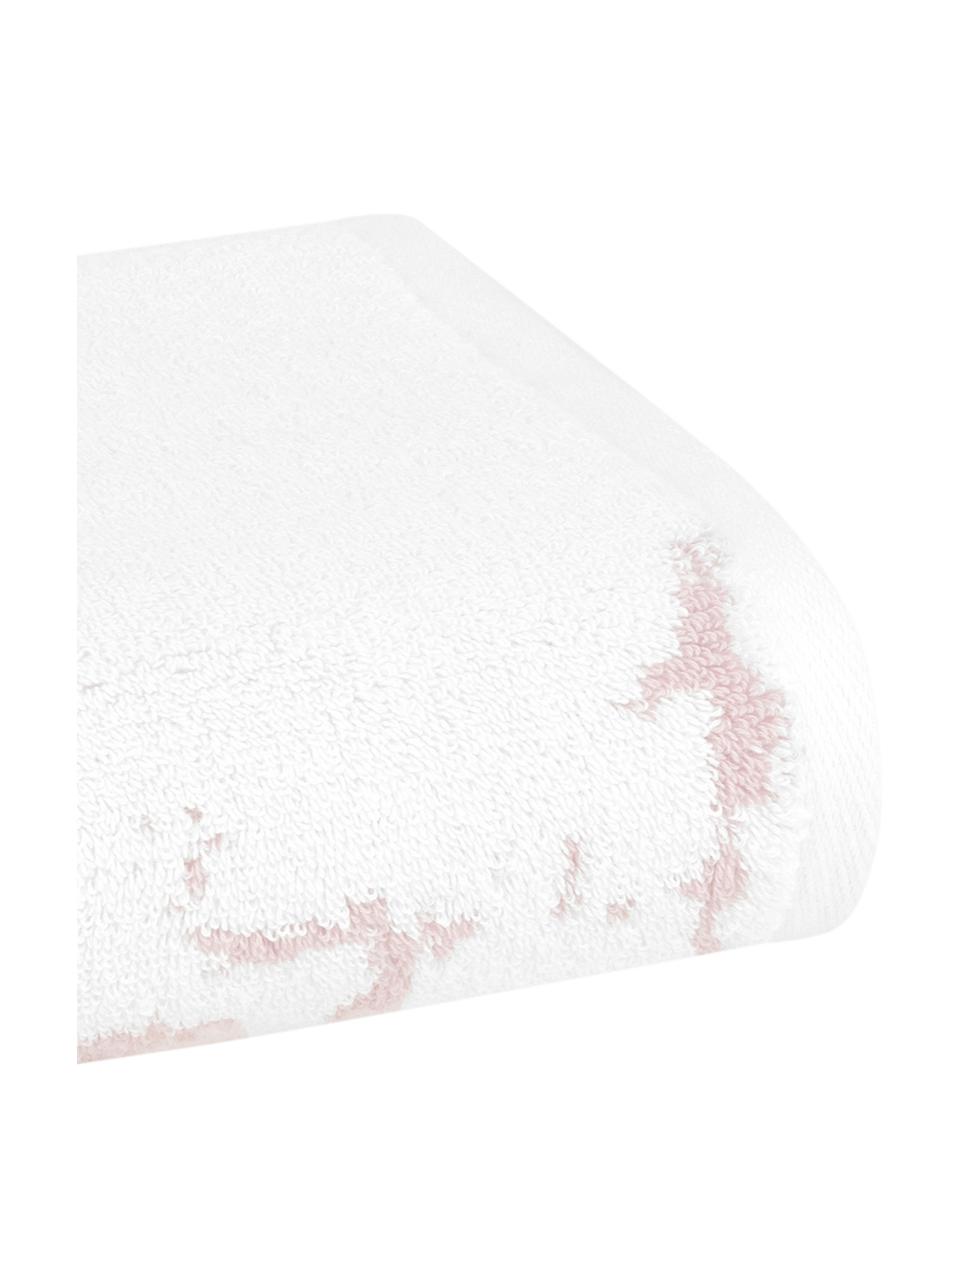 Asciugamano con motivo effetto marmo Malin, Rosa chiaro, bianco, Asciugamano per ospiti, Larg. 30 x Lung. 50 cm, 2 pz